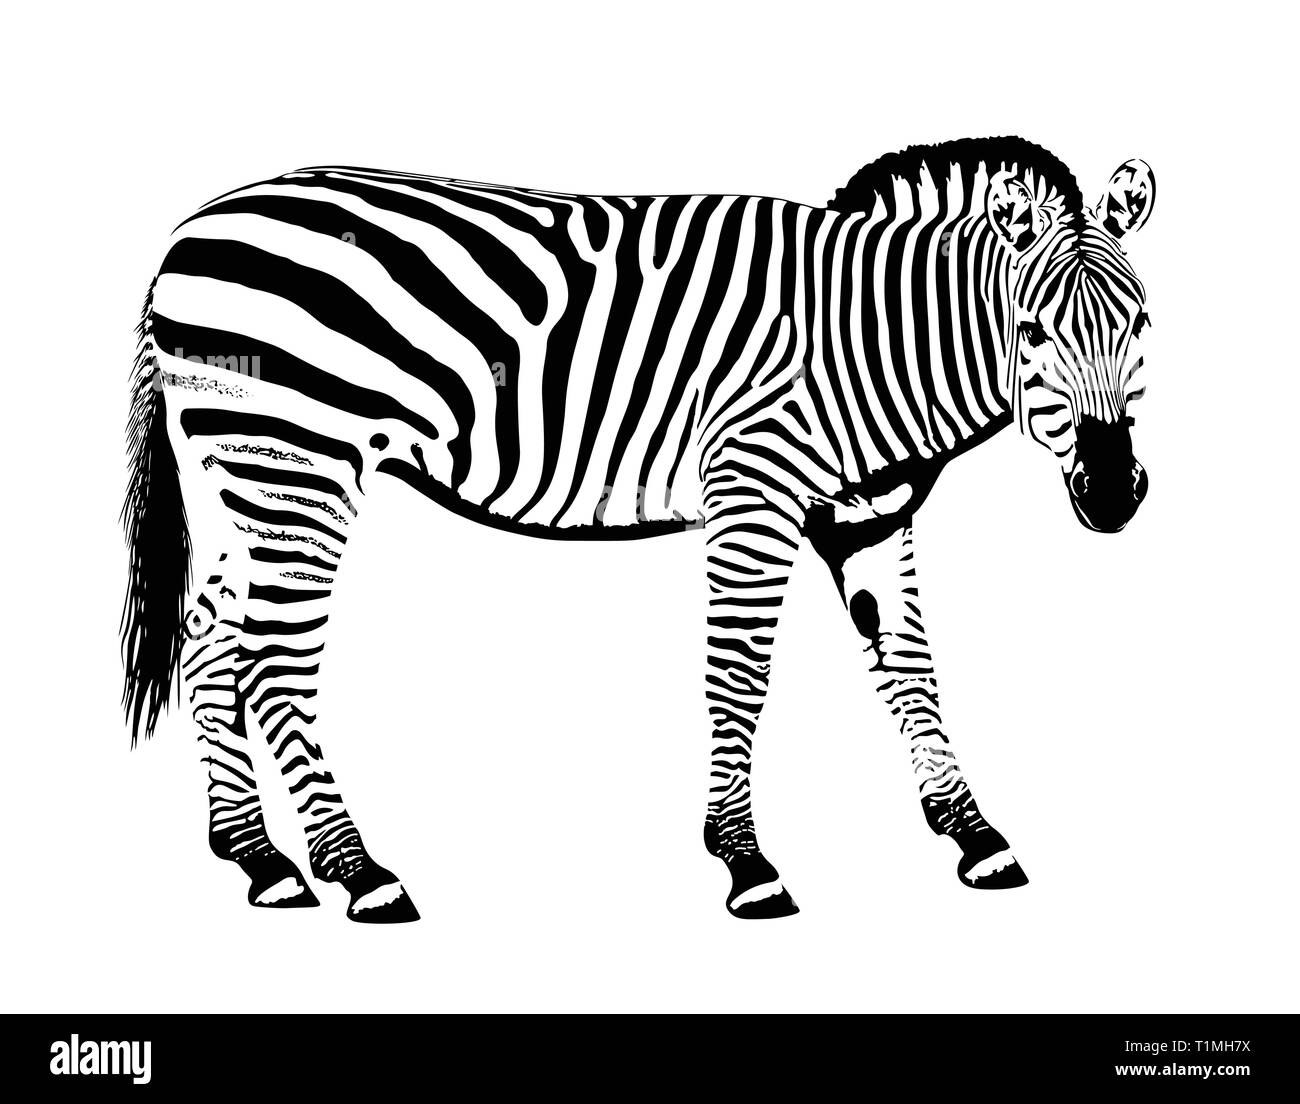 Galería animal Zebra máscara dibujada a mano ilustración vectorial Ilustración del Vector